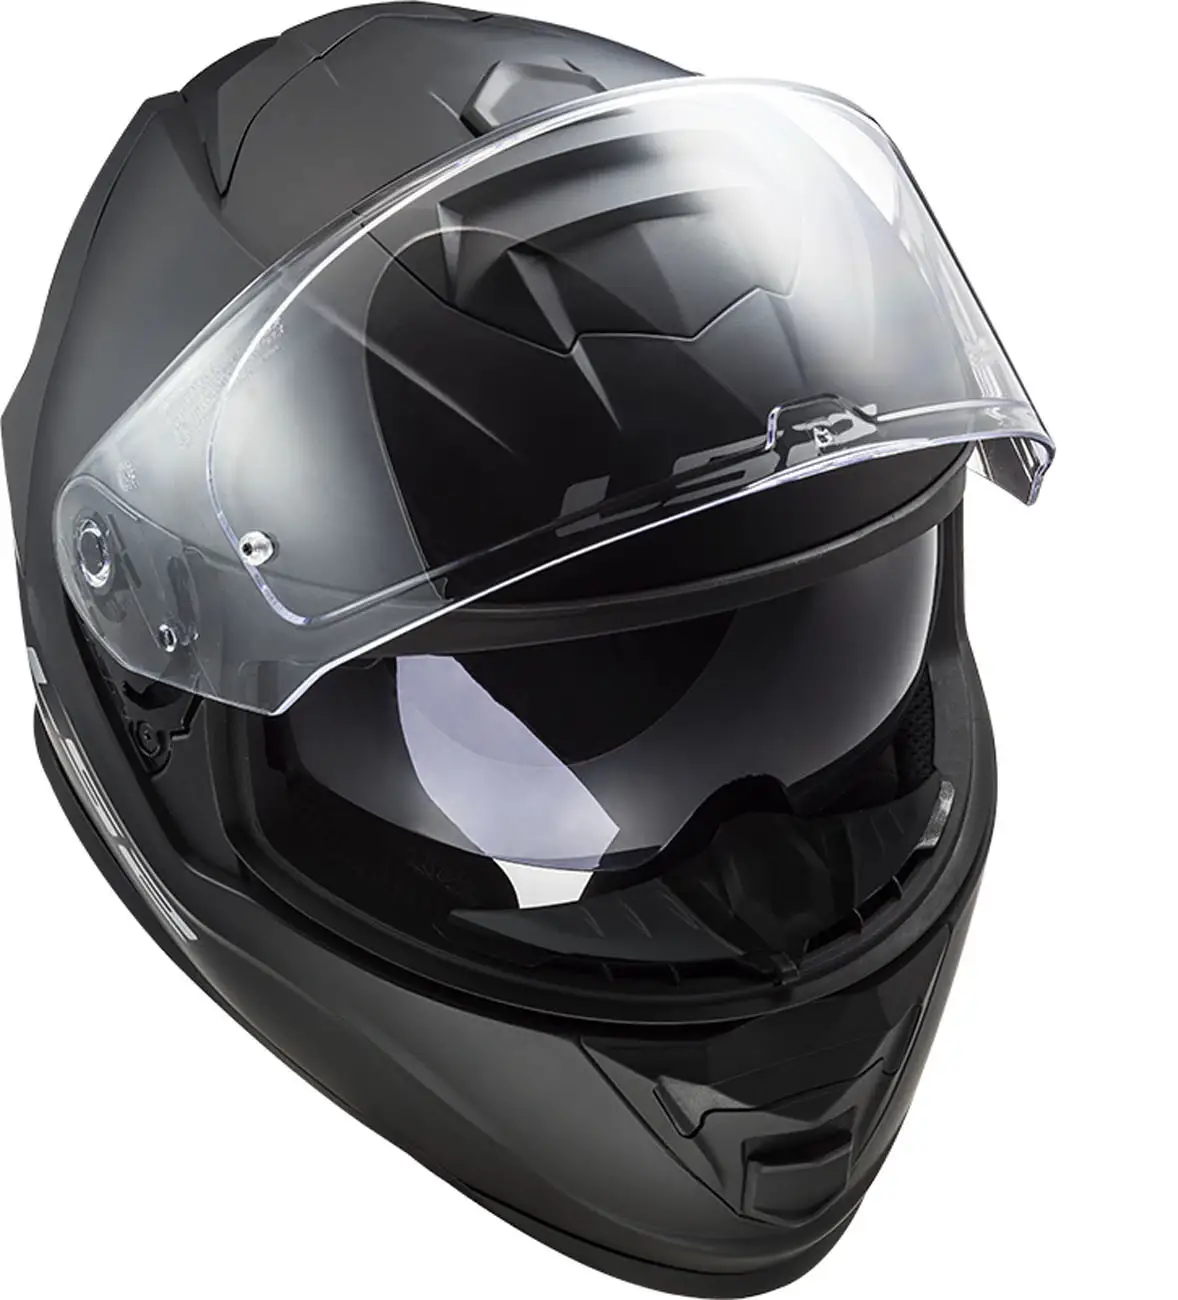 LS2 FF800 STORM SOLID full face helmet MATT BLACK